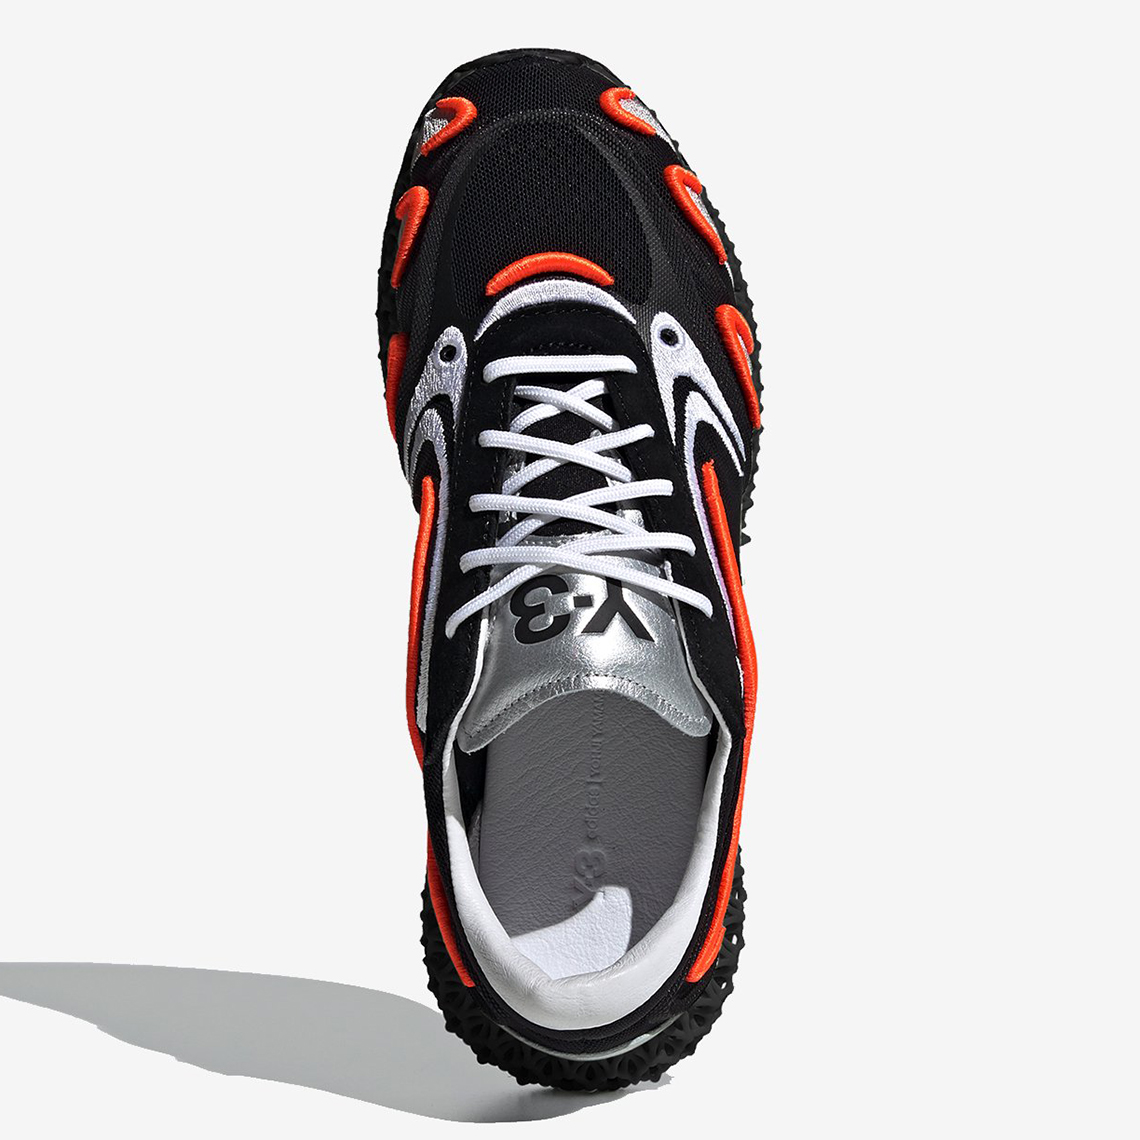 Adidas Y 3 Runner 4d Fu9208 Black Orange Release Date 3